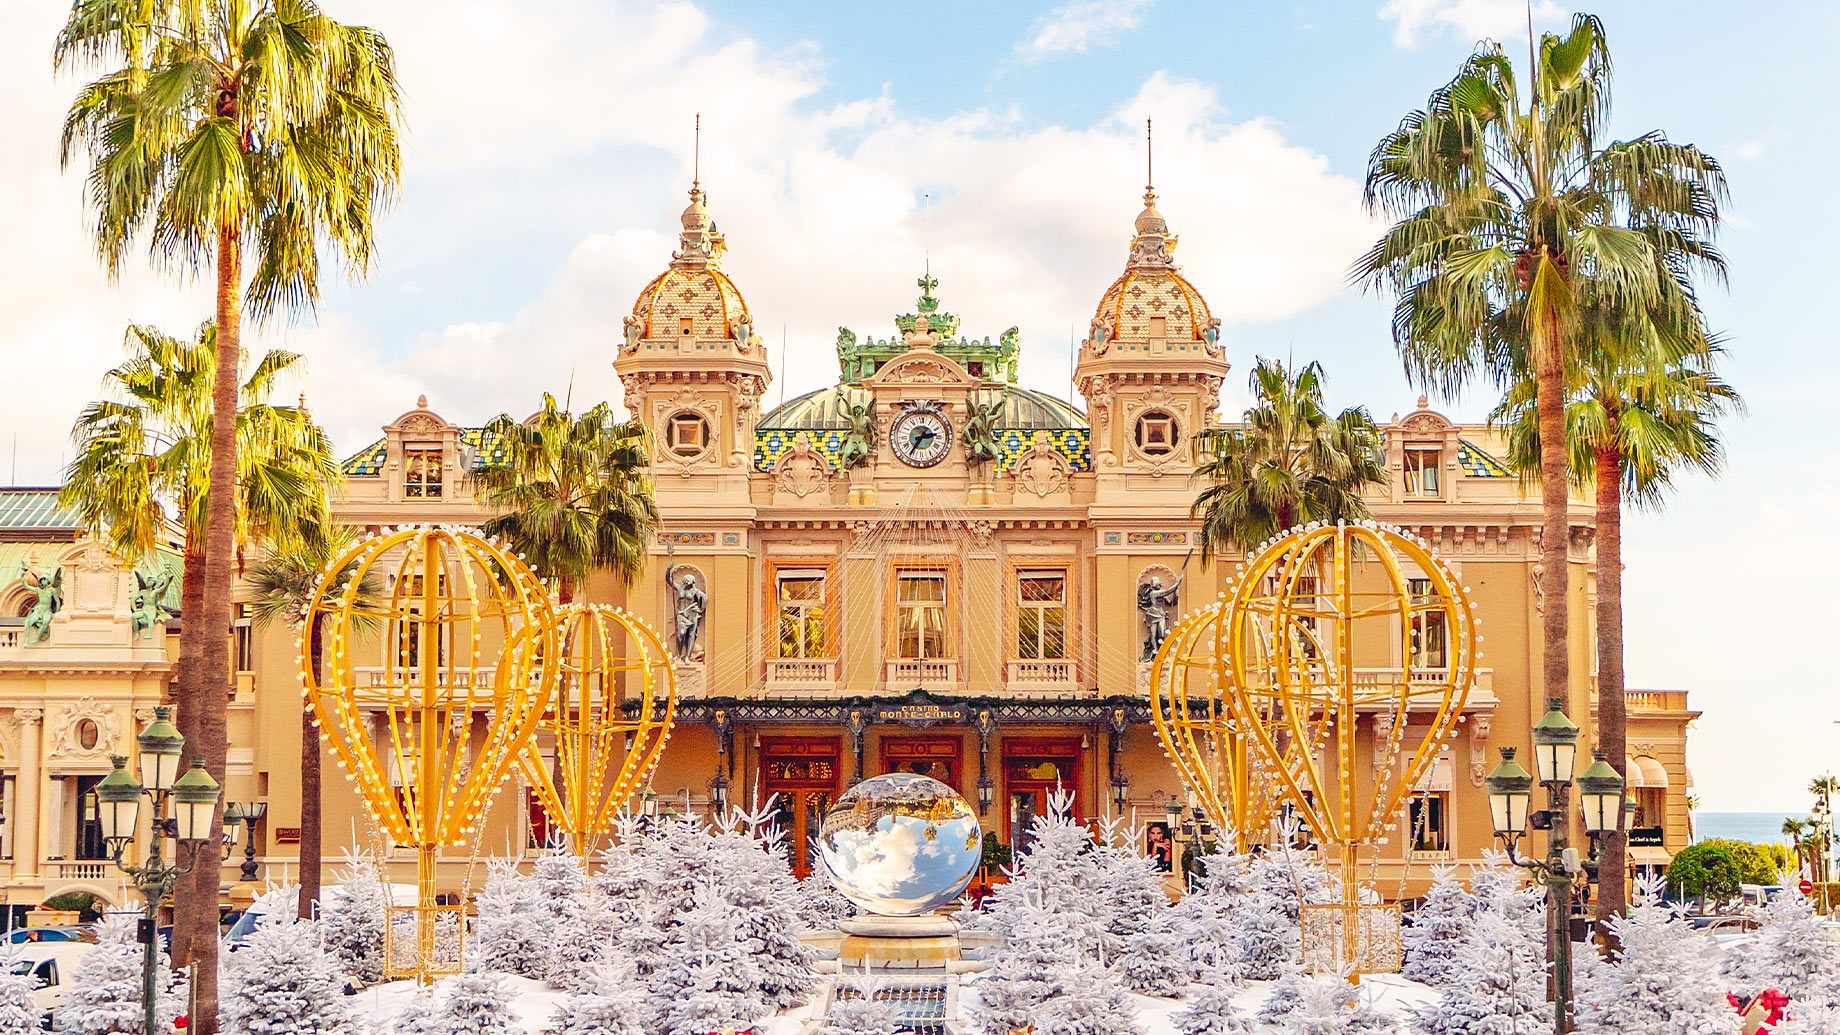 Monte Carlo Casino in Monaco, View of Grand Theatre, office of Les Ballets de Monte Carlo in Winter